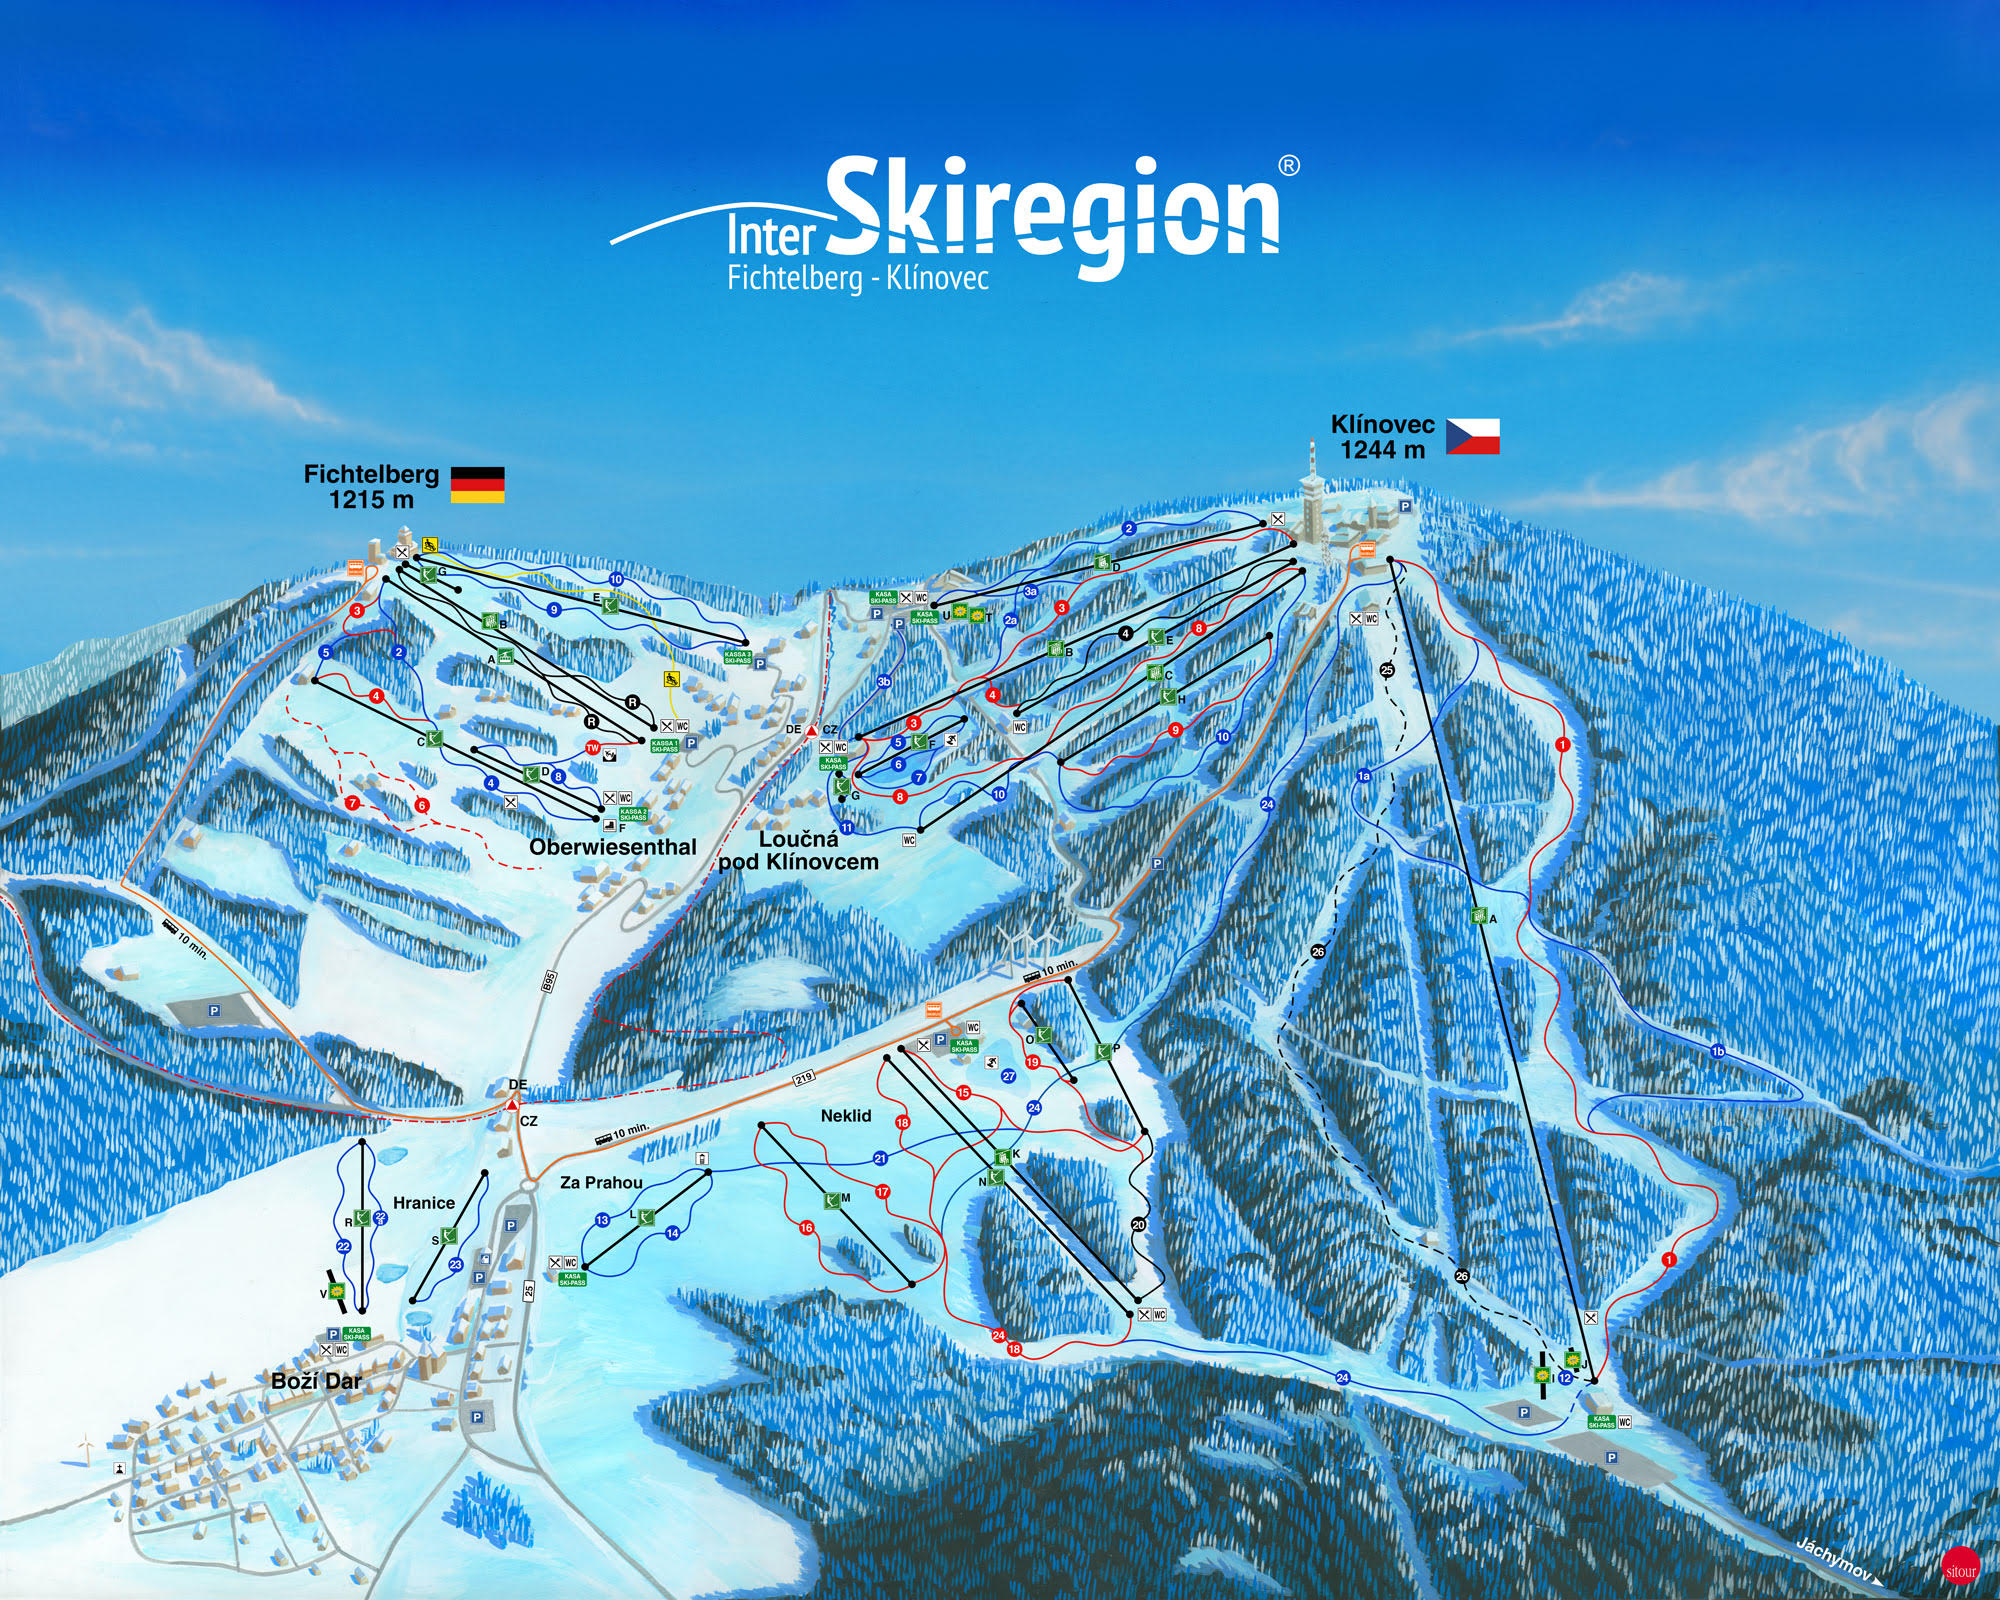 Inter Skiregion Fichtelberg Klínovec